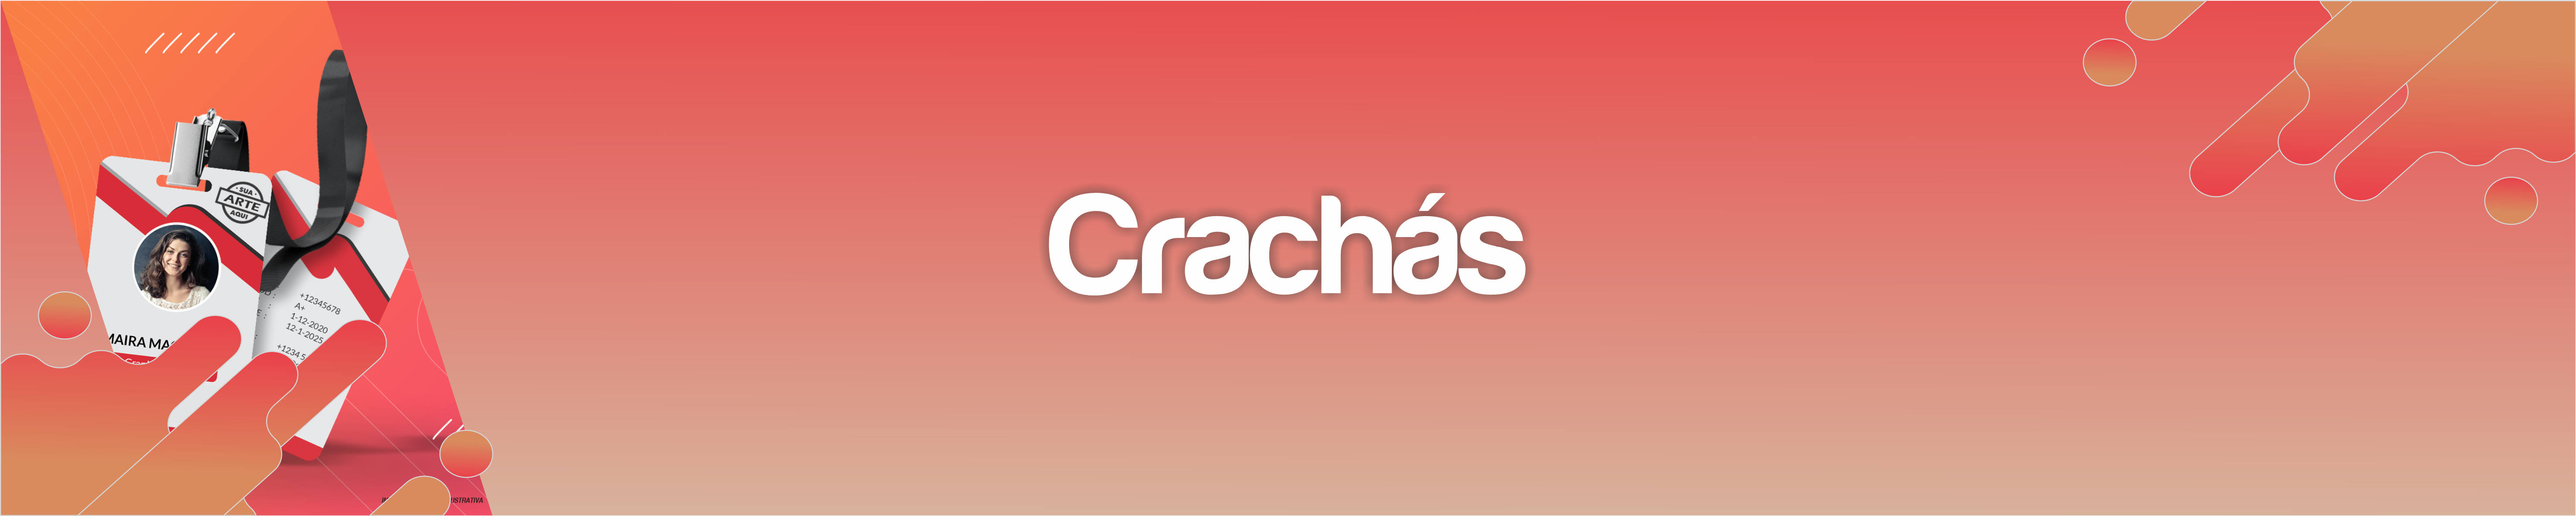 crachas